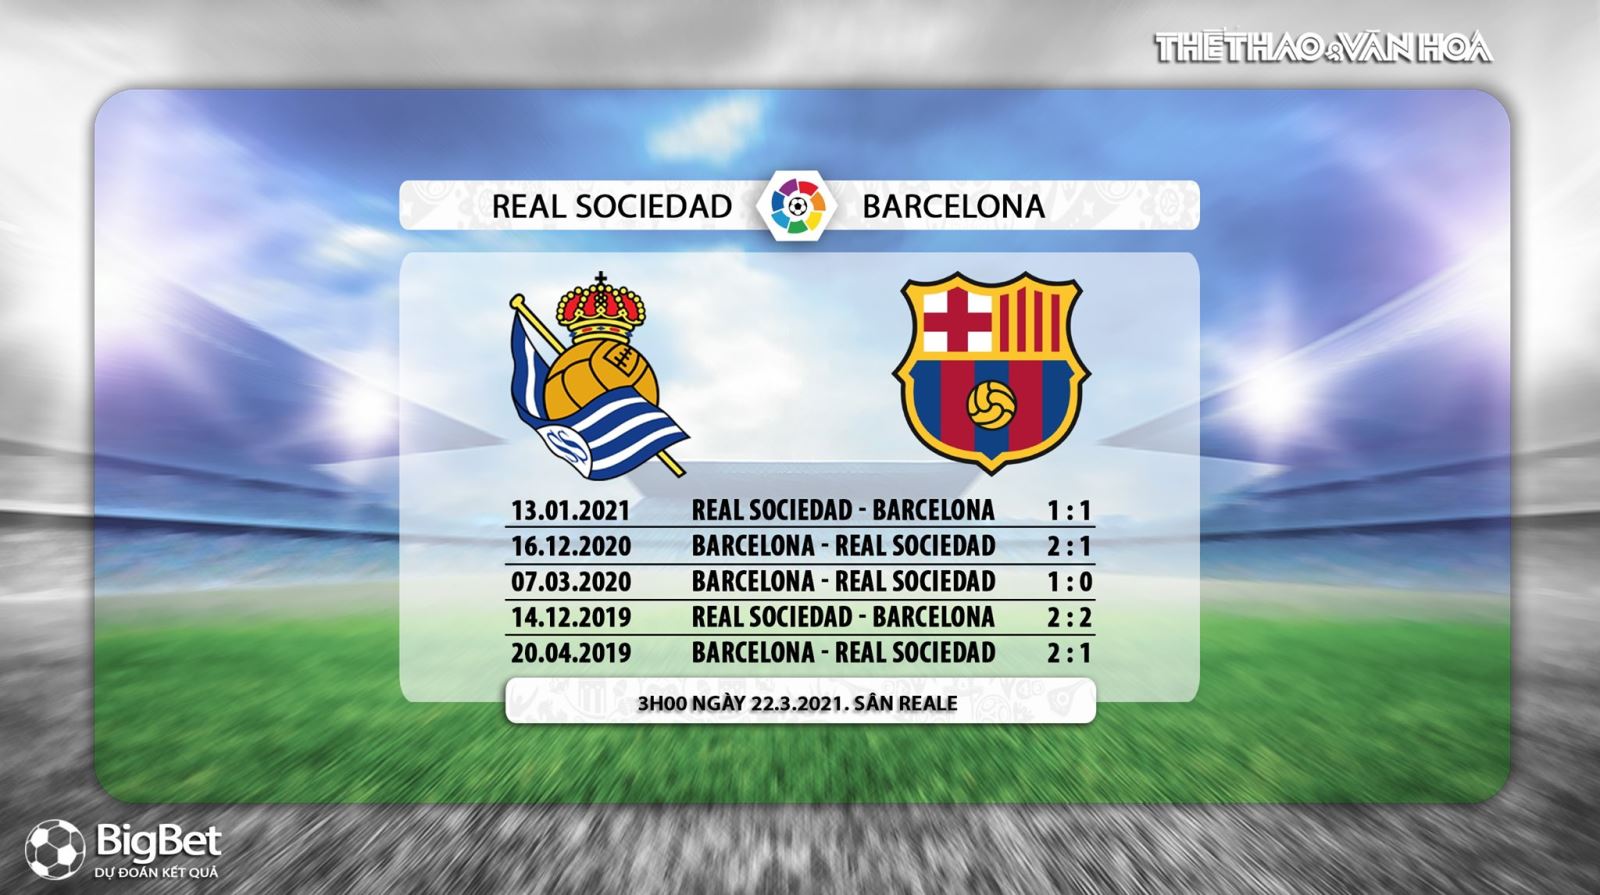 Keo nha cai, Nhận định kết quả, Real Sociedad vs Barcelona, BĐTV trực tiếp bóng đá Tây Ban Nha, kèo Barcelona, xem trực tiếp bóng đá Barcelona đấu với Real Sociedad, kè Barca